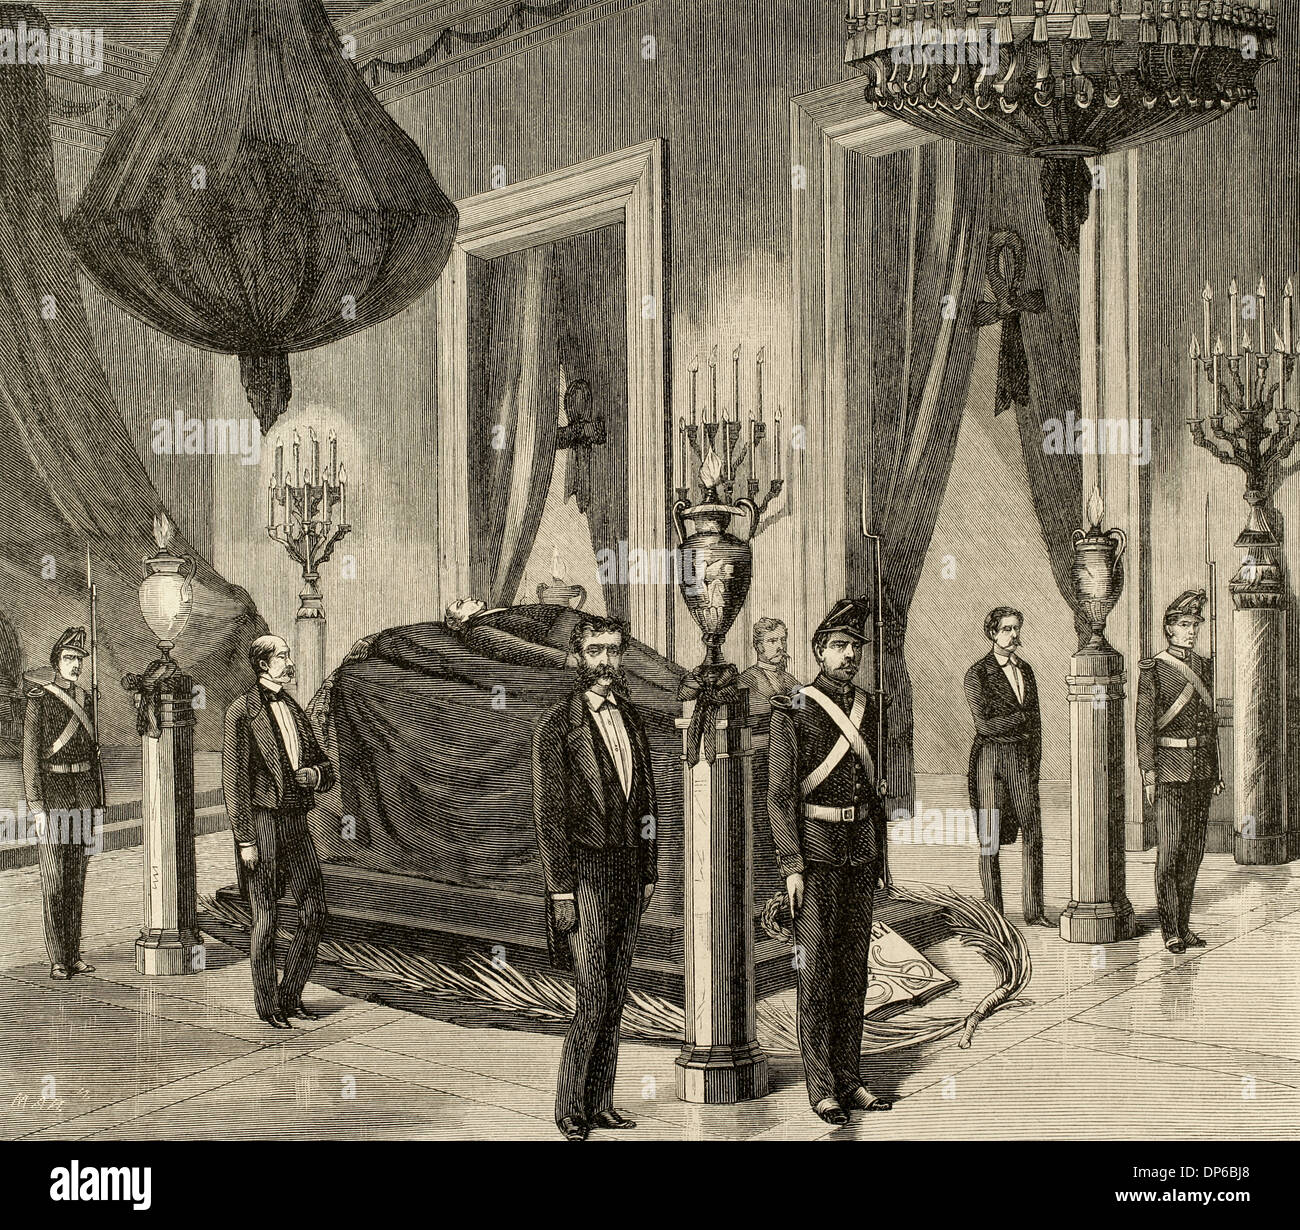 Benito Juarez (1806-1872). Le président du Mexique. Le cadavre du président exposés dans le hall principal du palais. La gravure. Banque D'Images